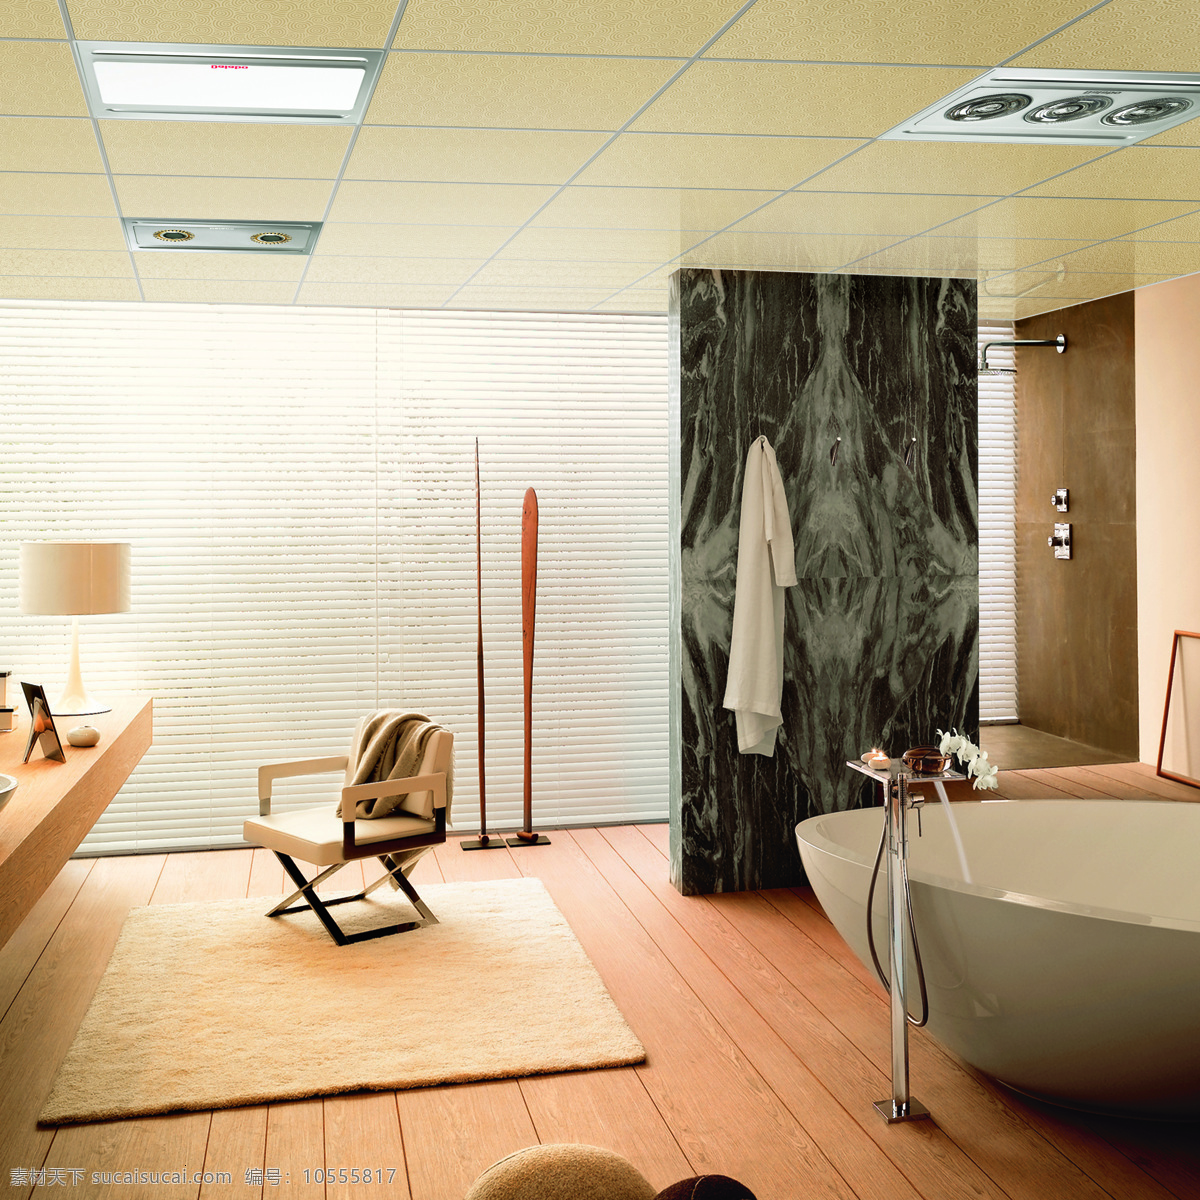 简约 生活 室内设计 毛毯 浴缸 集成吊顶 大理石 木地板 台灯 方式椅子 图片集 环境设计